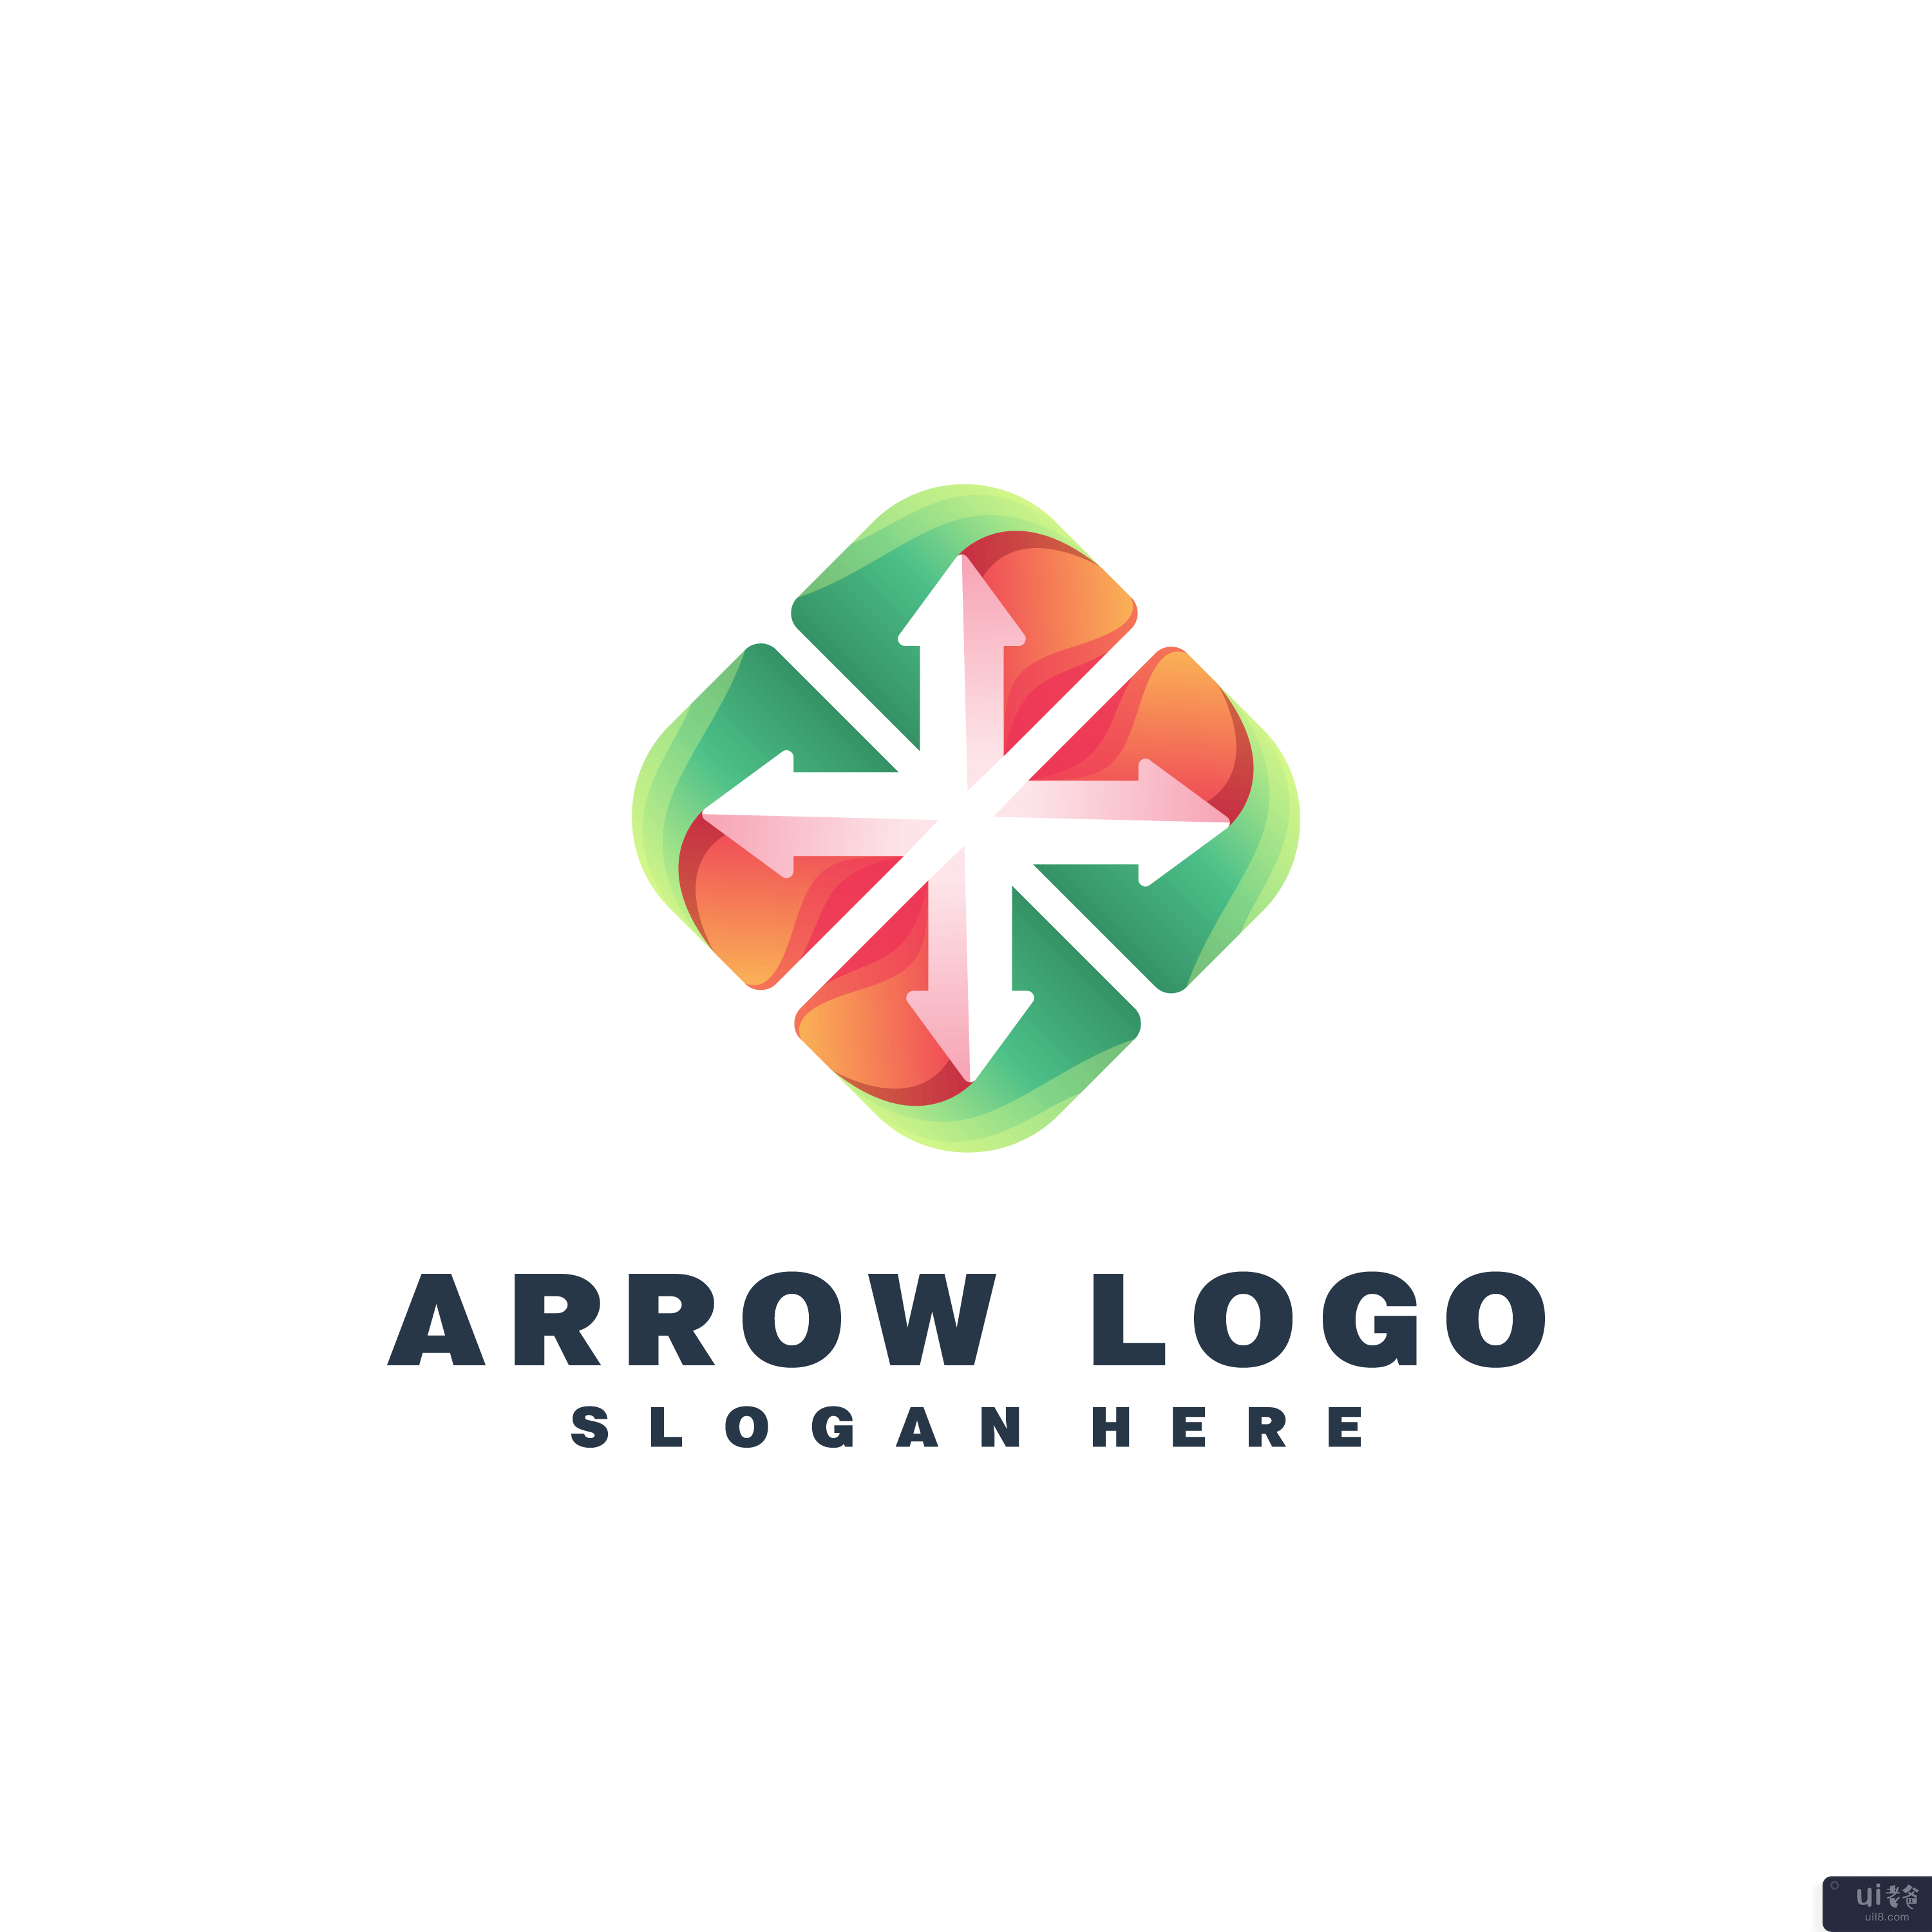 箭头彩色标志设计矢量(Arrow colorful logo design vector)插图